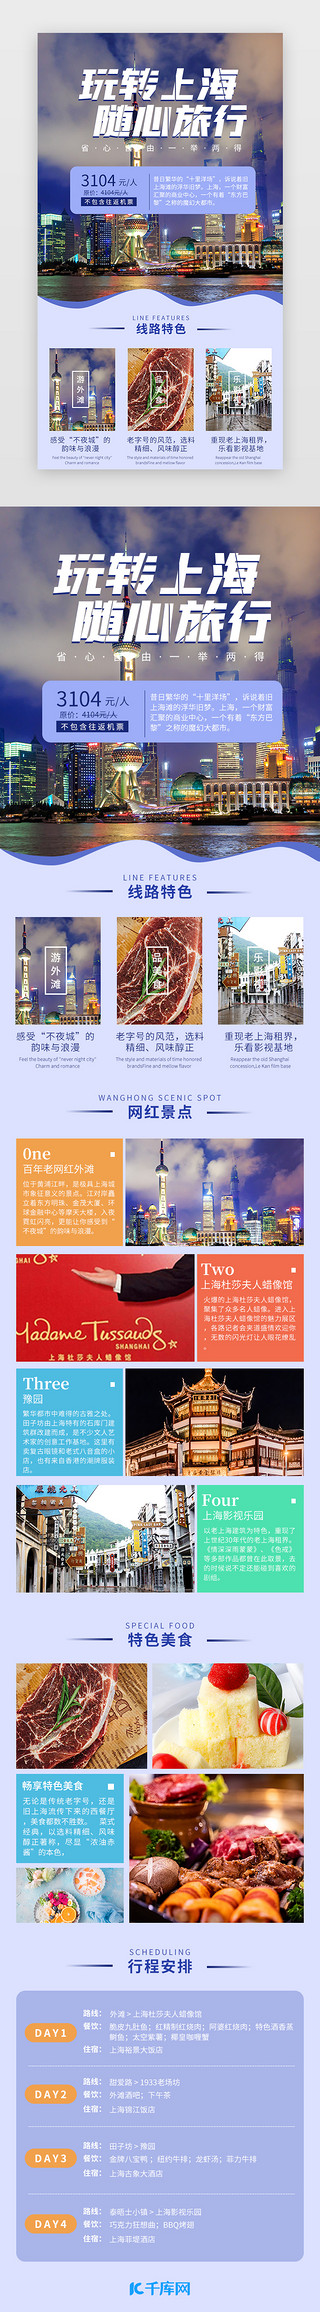 上海凌空UI设计素材_玩转上海 随心旅行 蓝色简约景点介绍H5